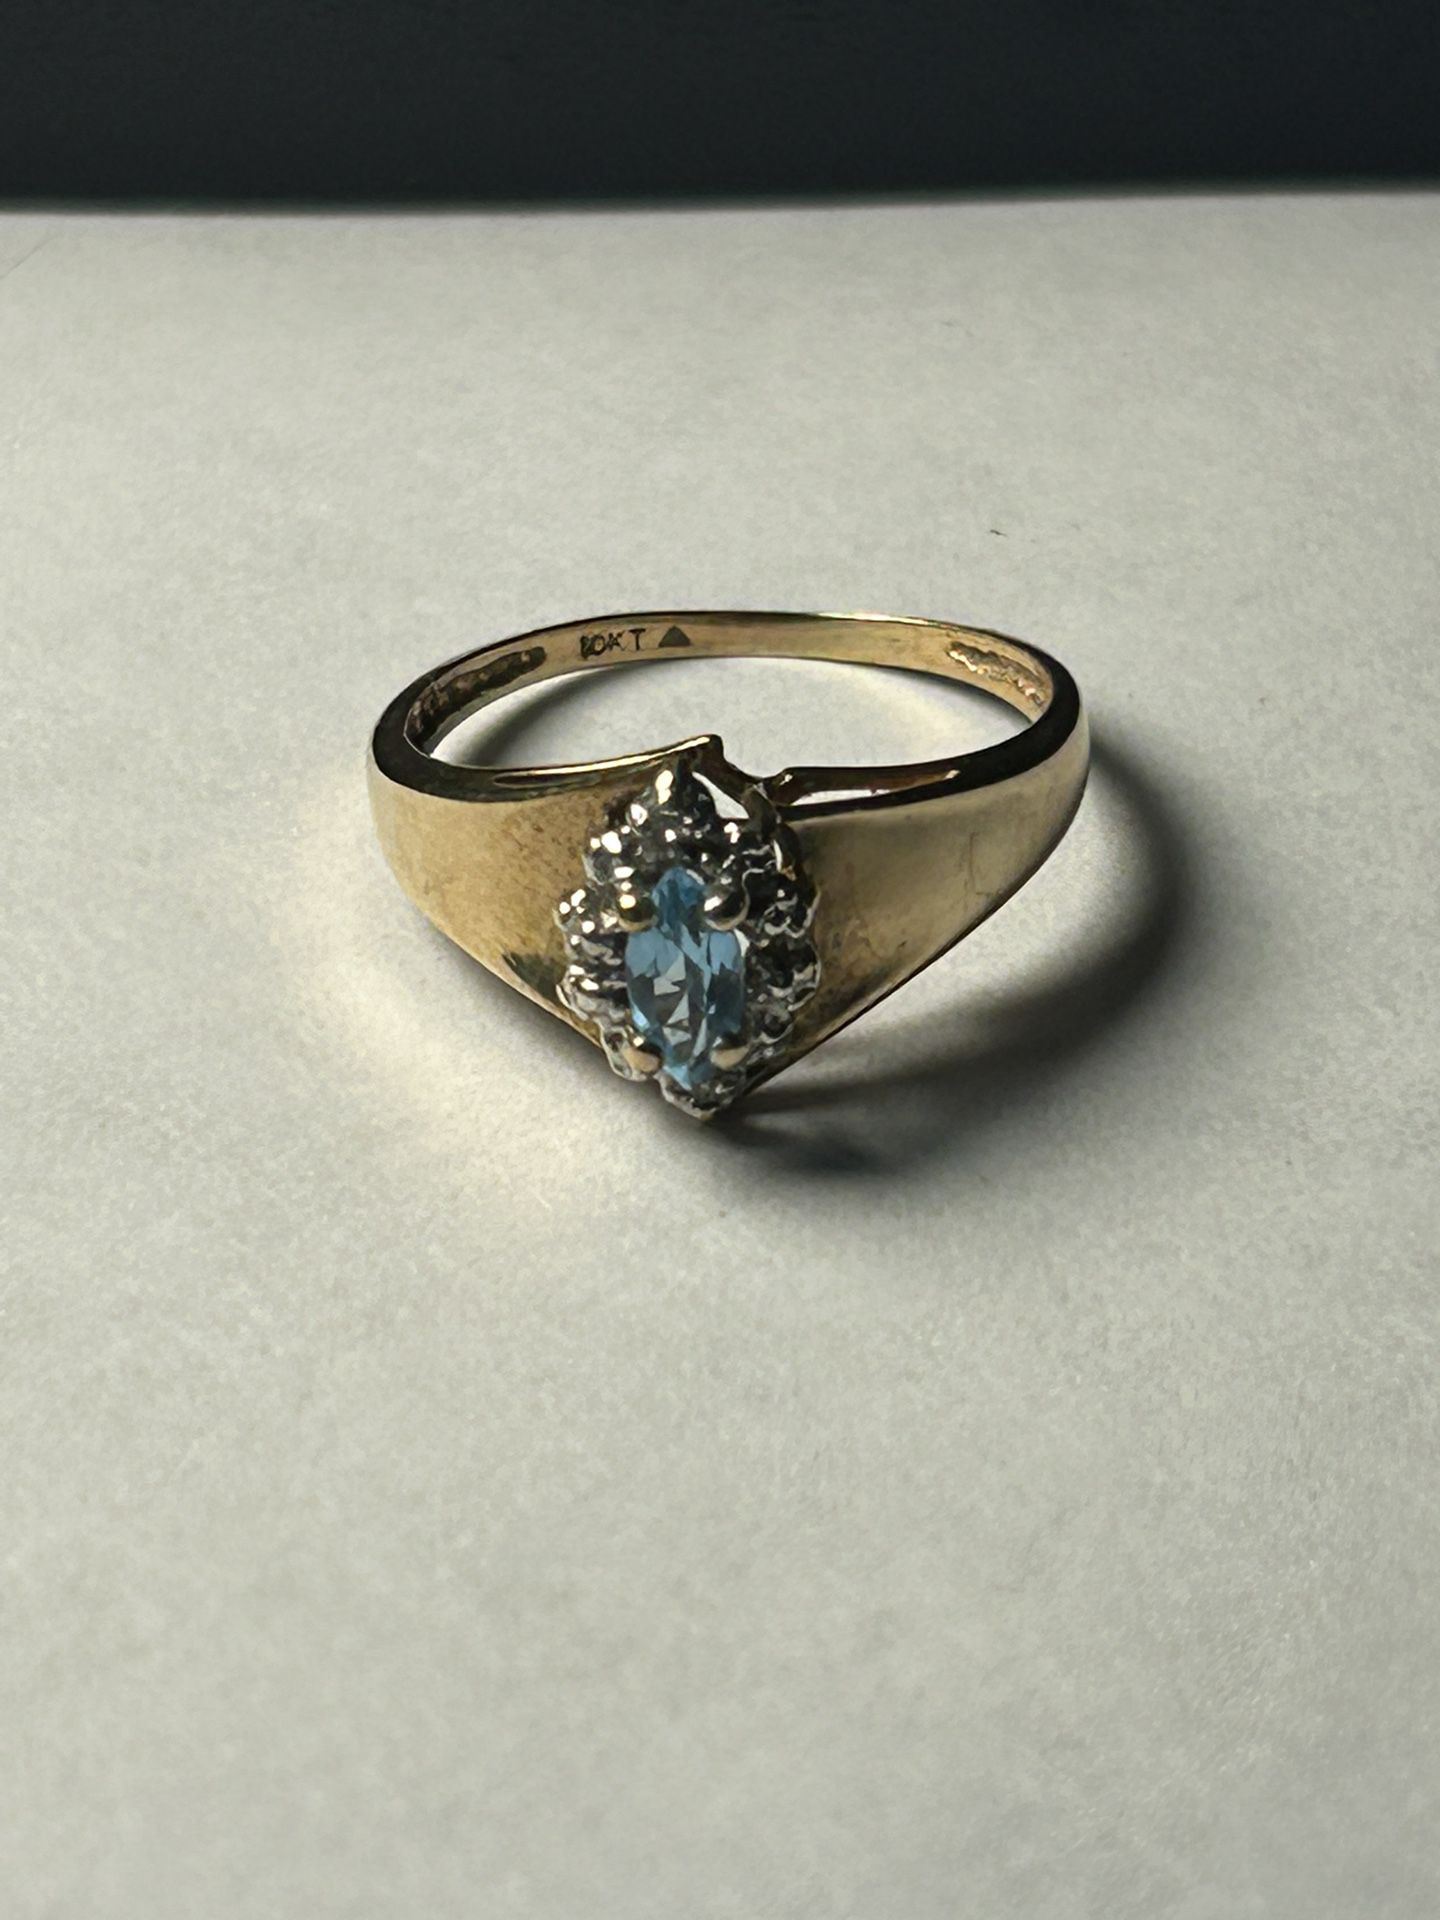 10K Yellow Gold Genuine Aquamarine and Diamonds Ring Size 7